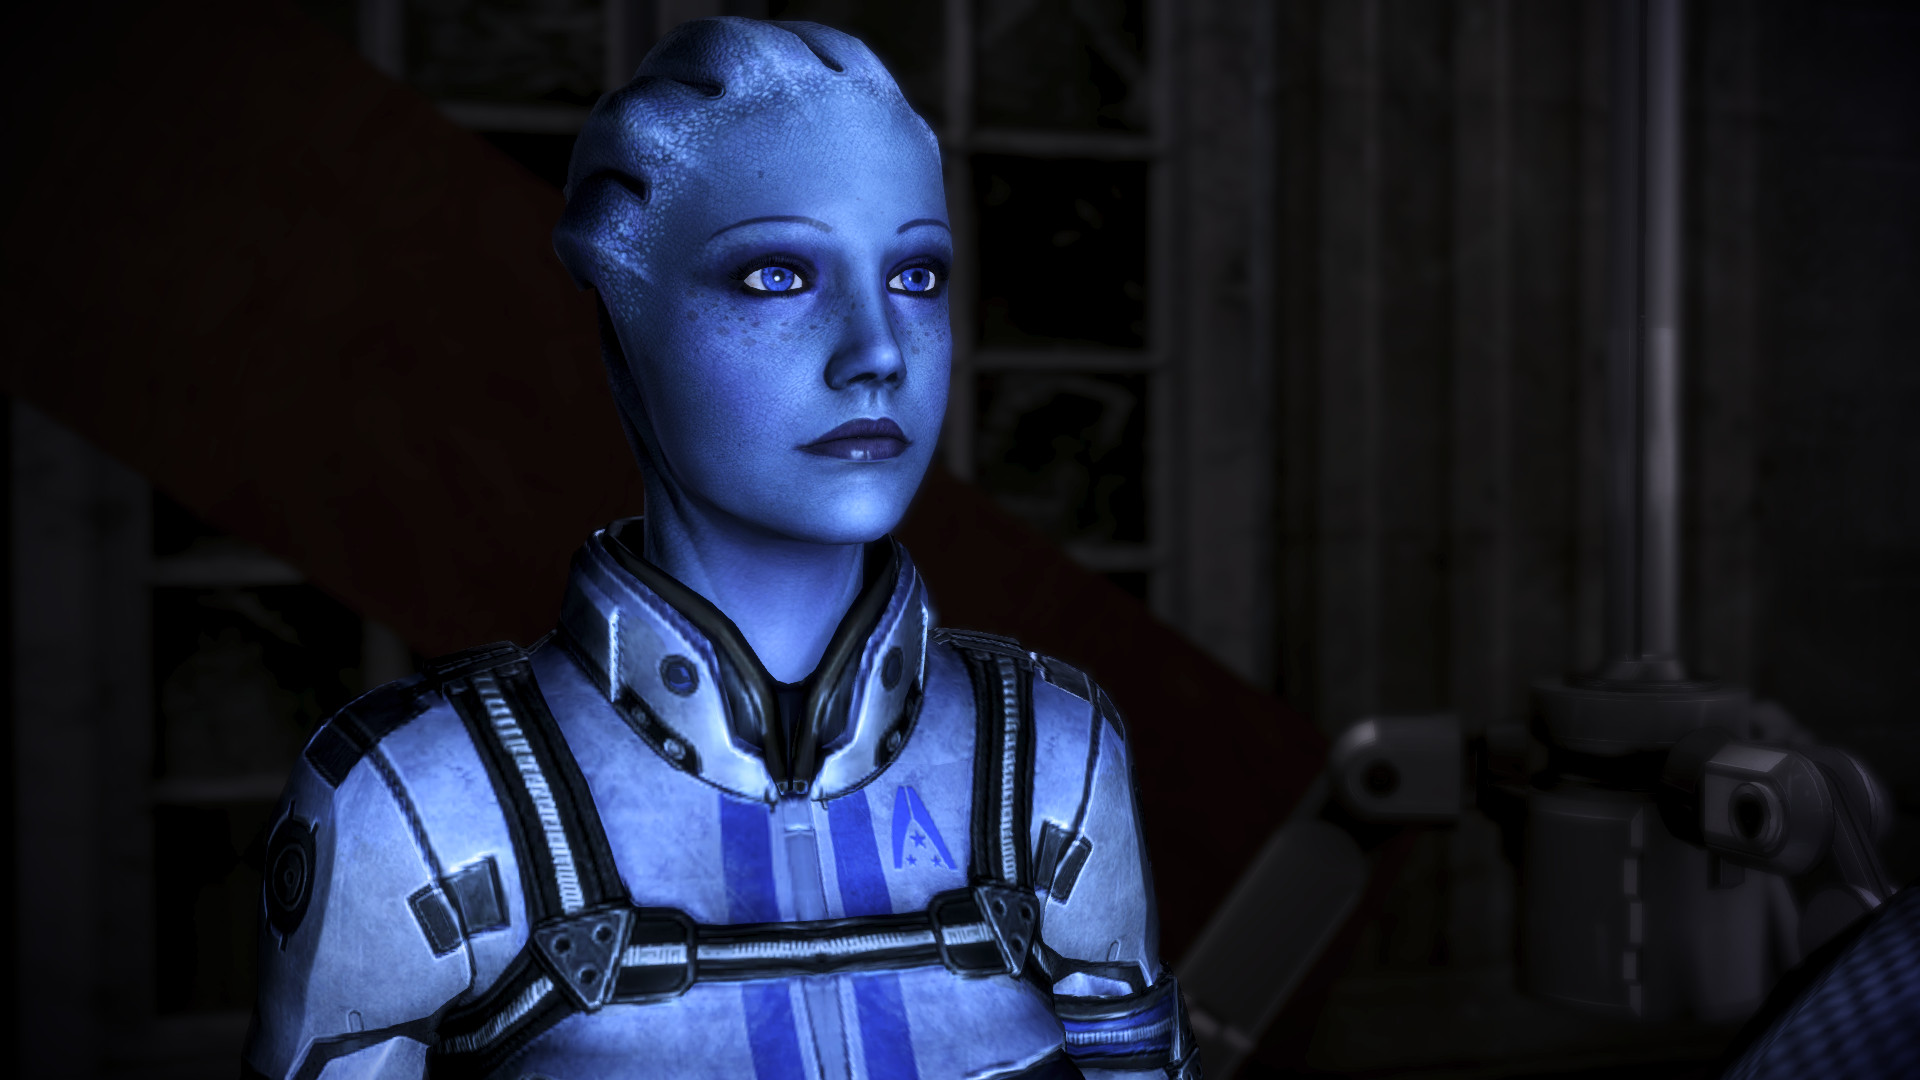 Descarga gratuita de fondo de pantalla para móvil de Liara T'soni, Mass Effect, Videojuego.